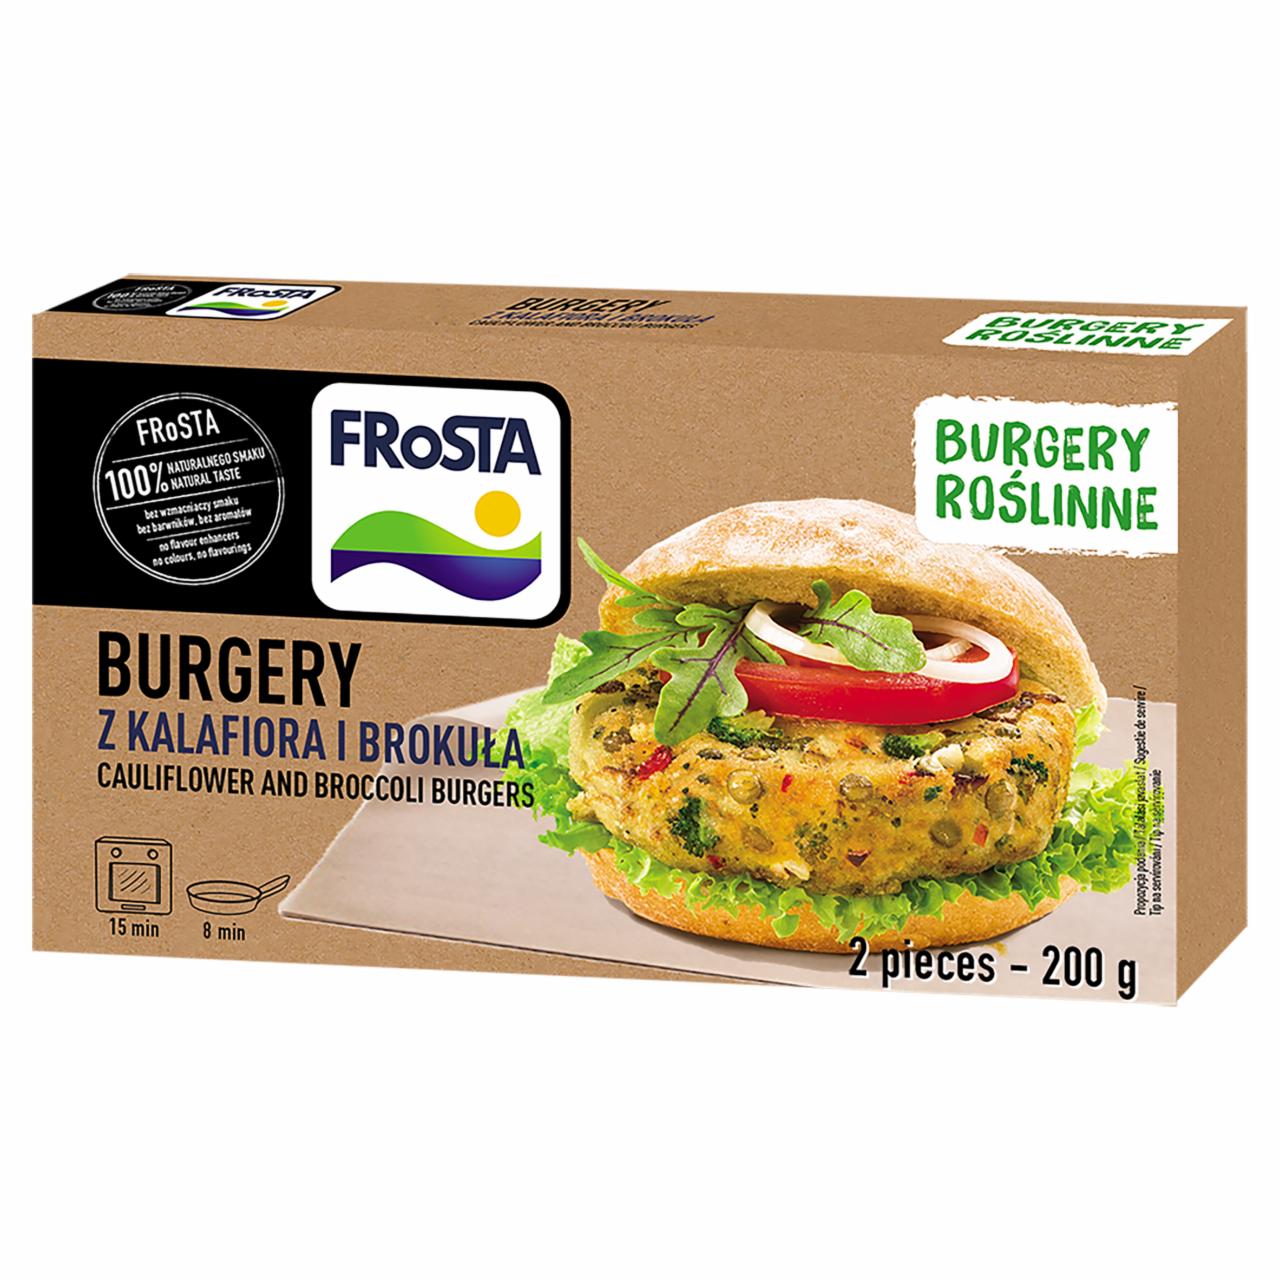 Képek - FRoSTA gyorsfagyasztott, elősütött növényi burger karfiolból és brokkoliból 2 db 200 g